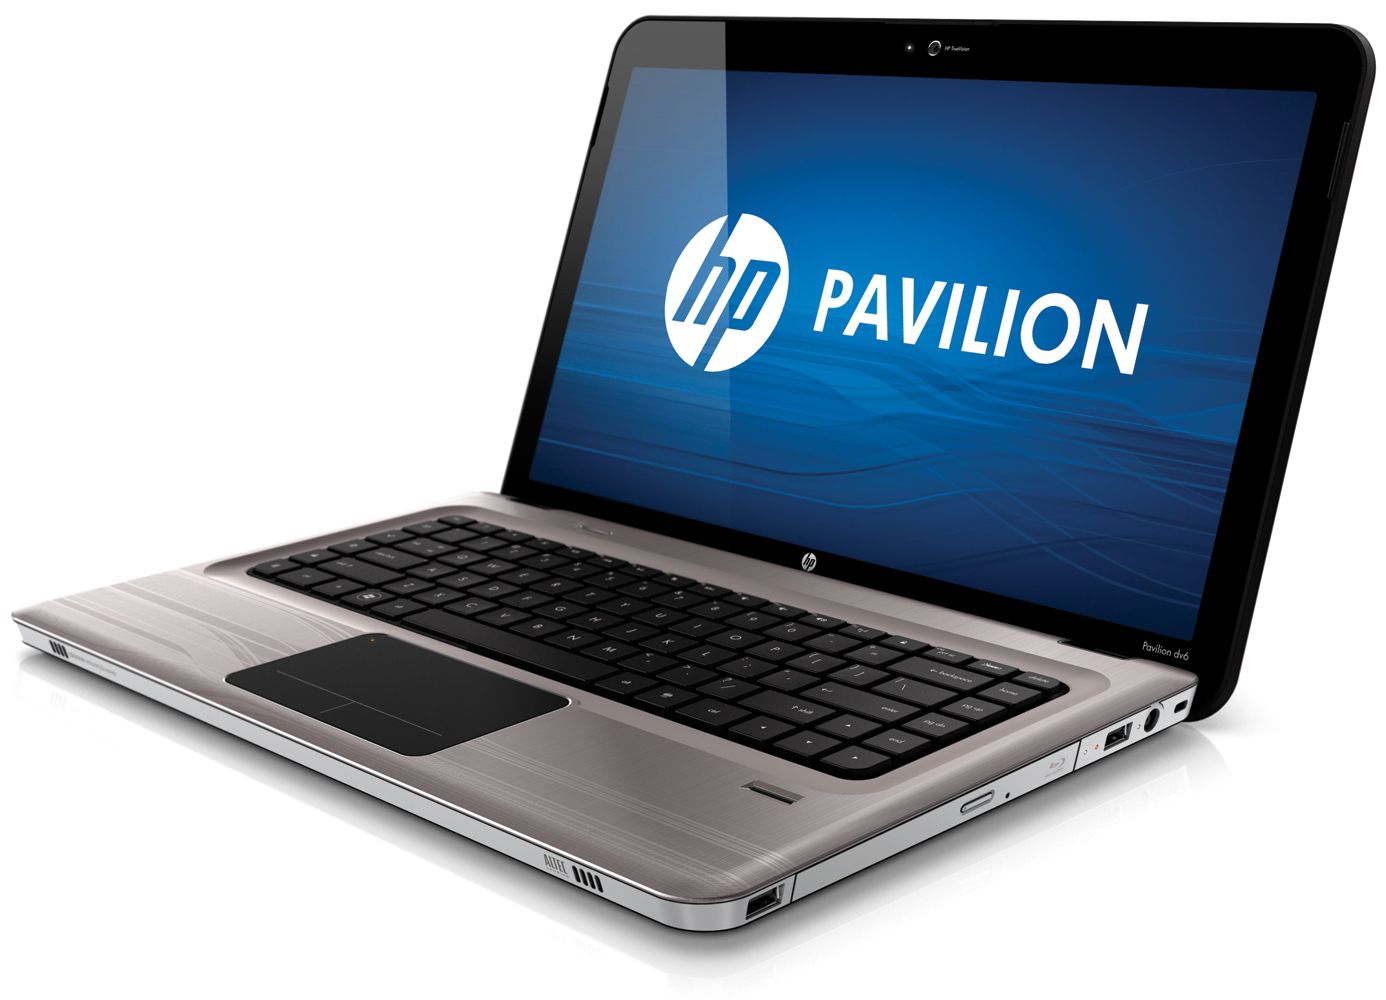 uk laptop parts: hp pavilion dm4-2180us Laptop Review